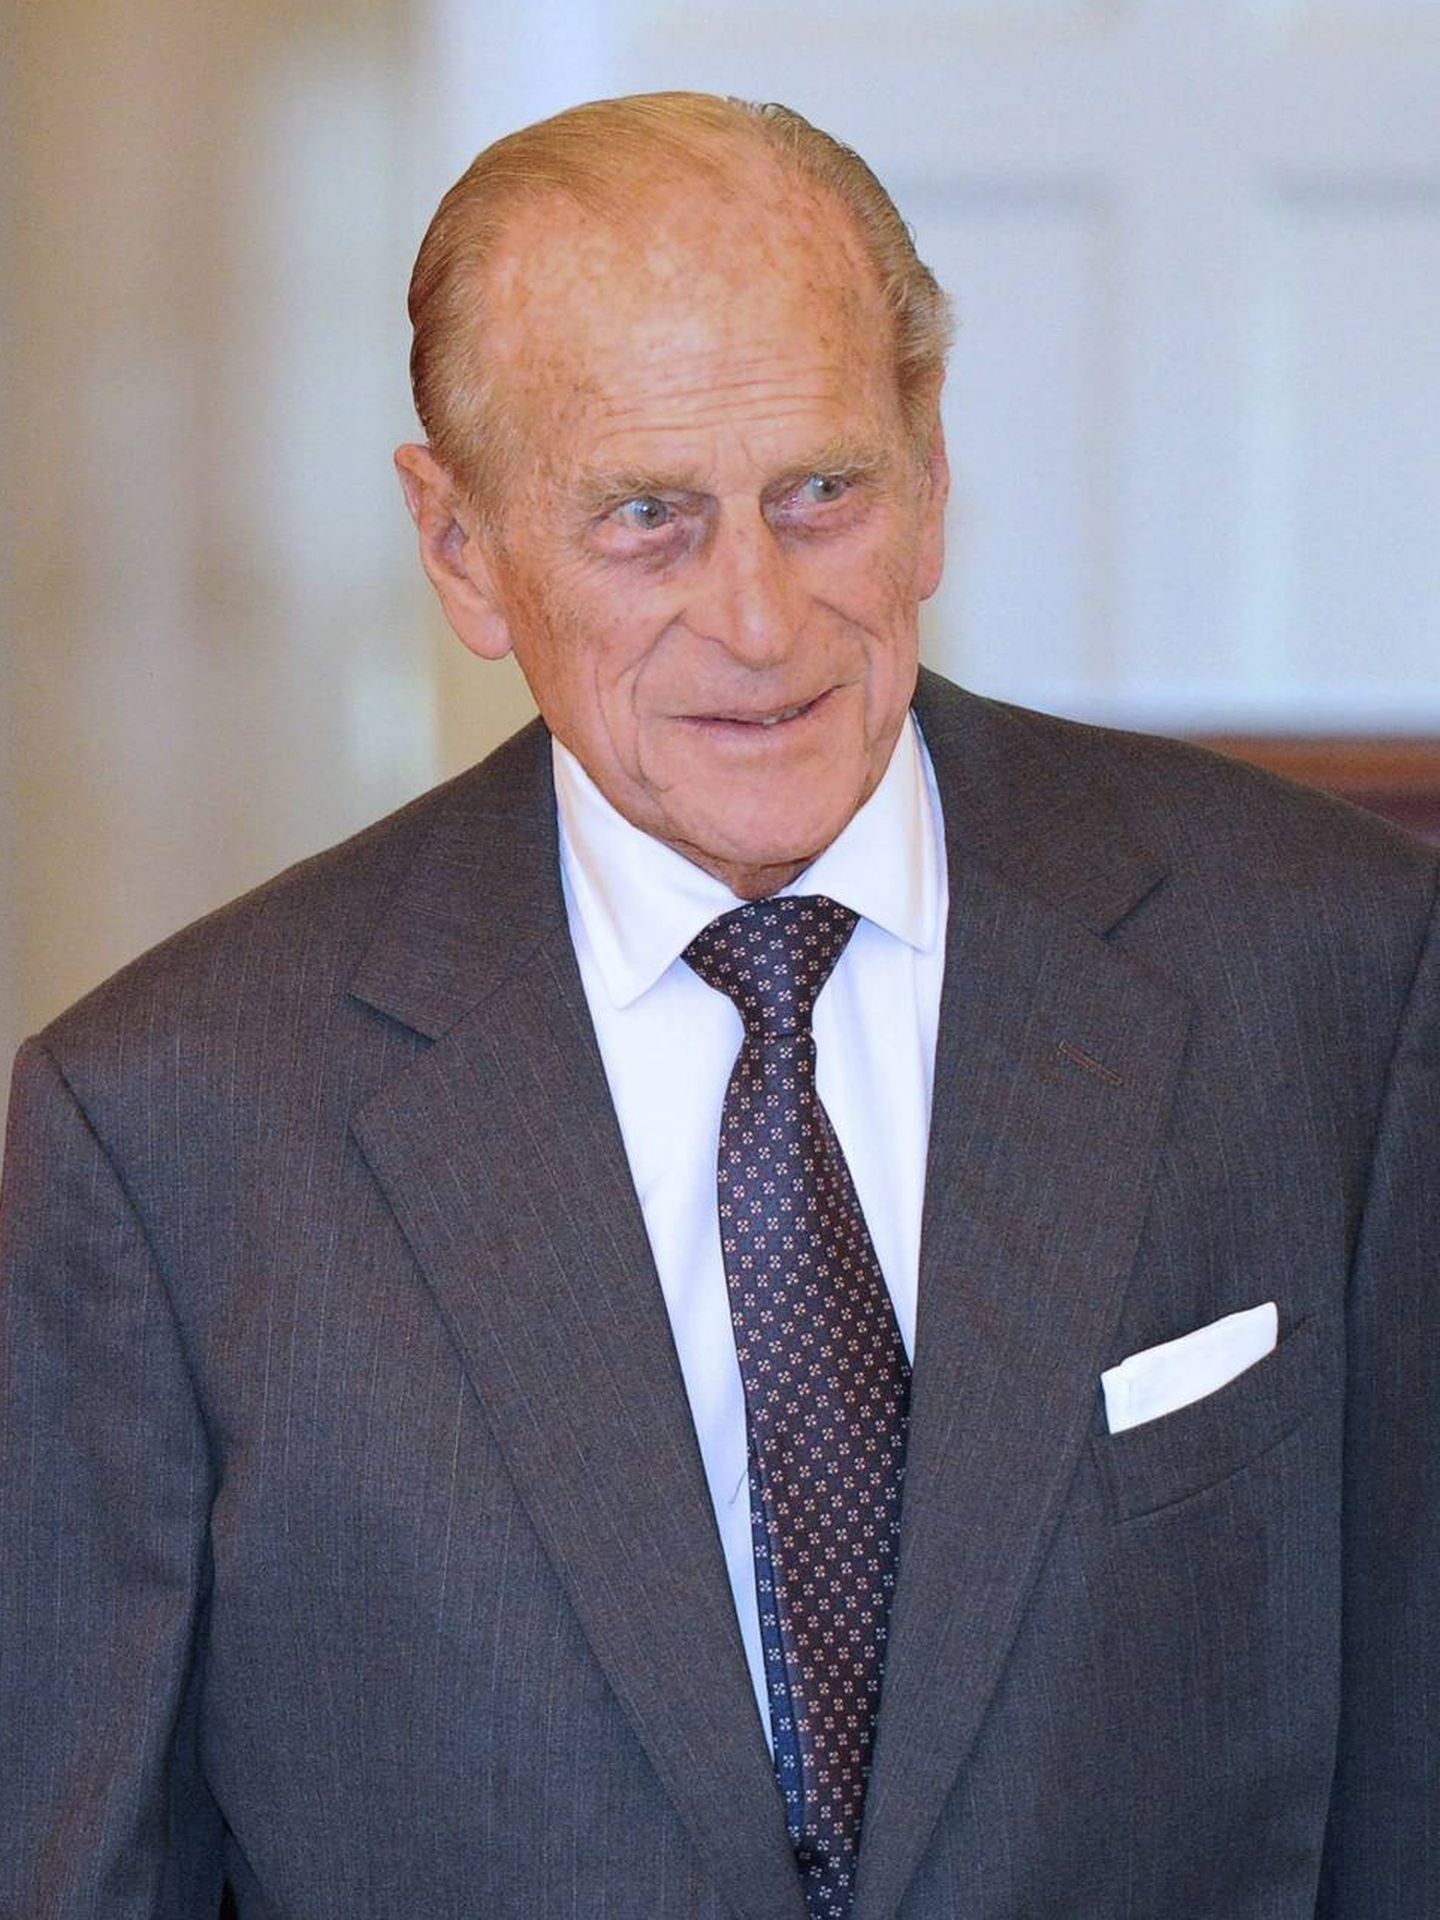 El príncipe Felipe, duque de Edimburgo, a su llegada a la sede del Gobierno australiano. (EFE/Torsten Blackwood)